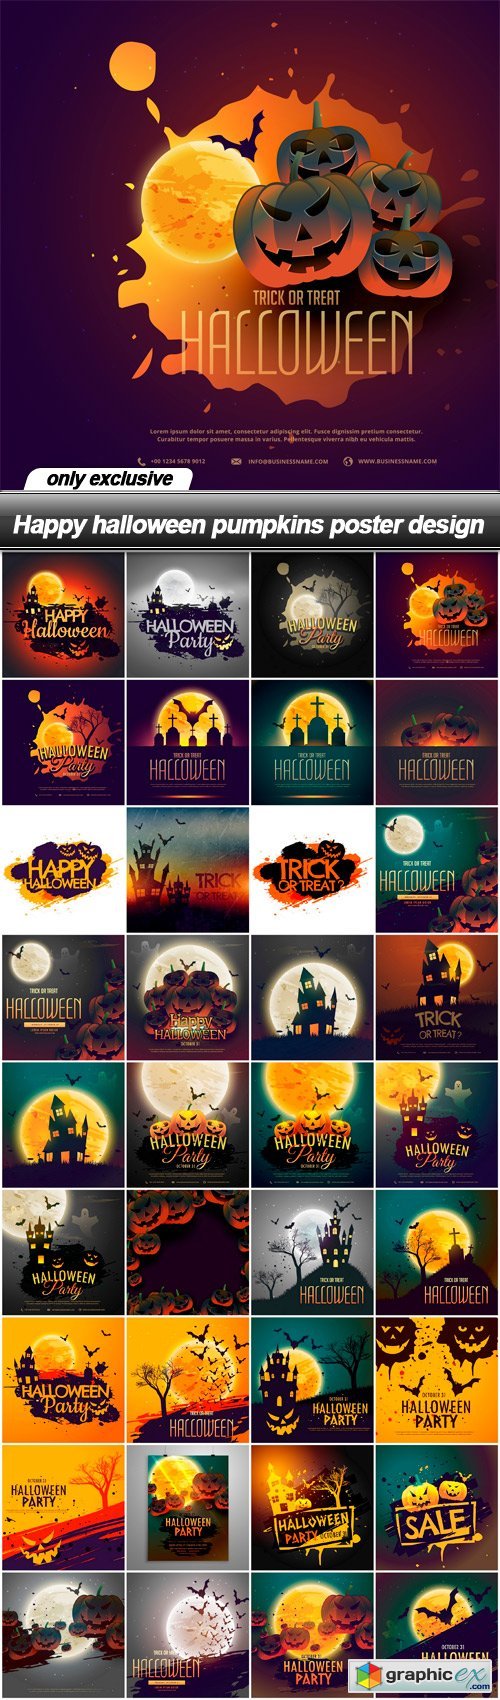 Happy halloween pumpkins poster design - 36 EPS